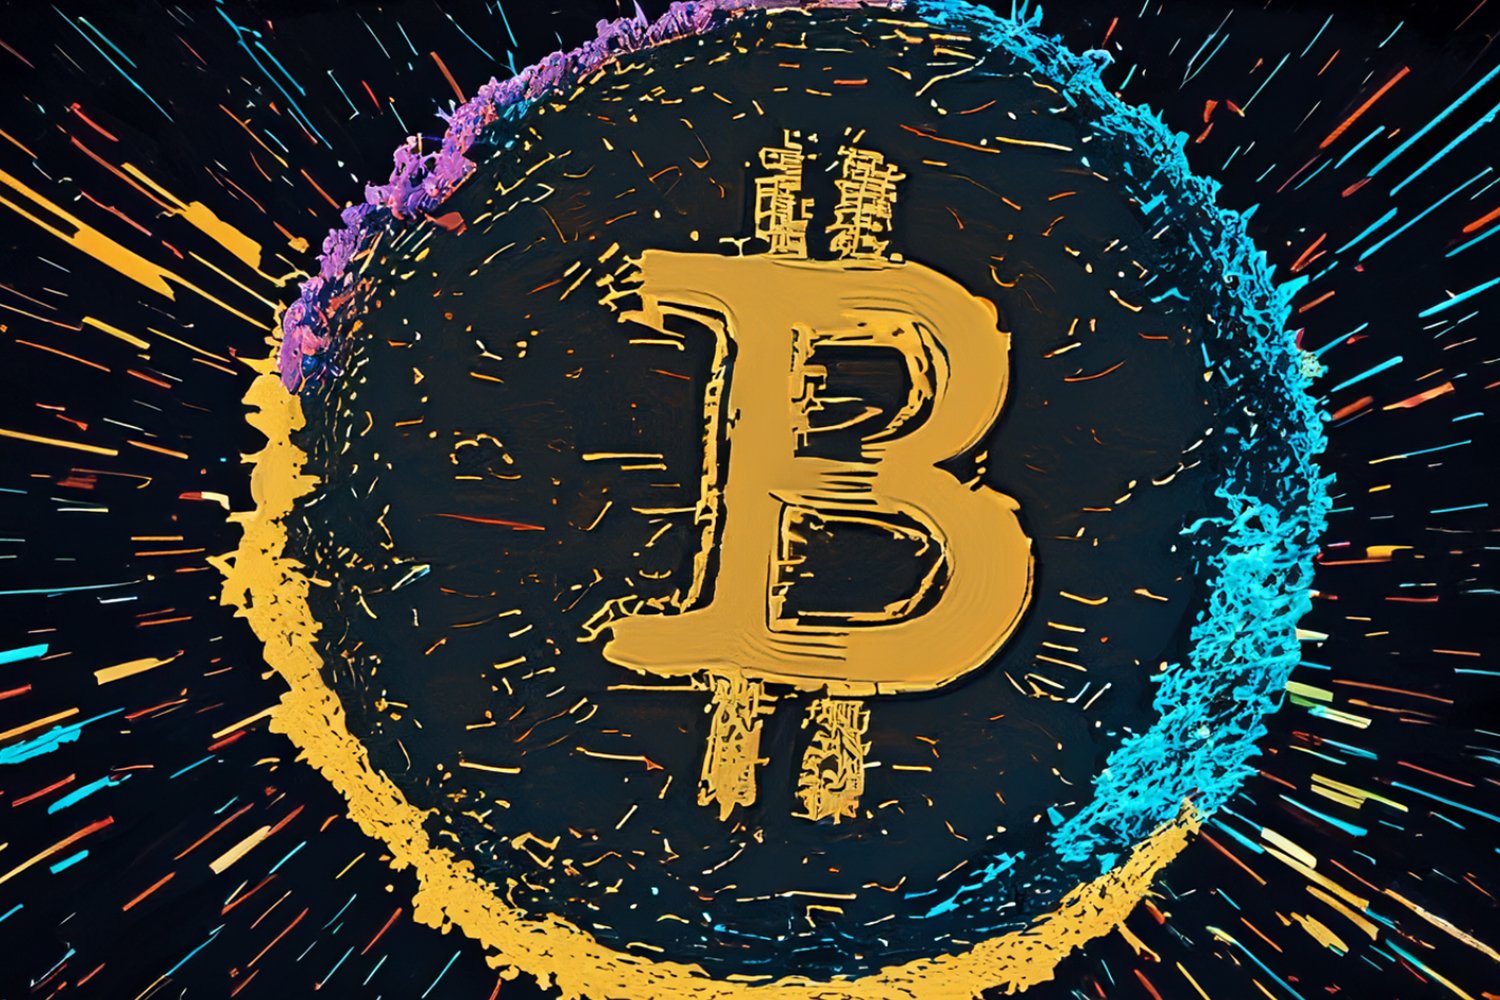 Fausses cryptos, arnaques : comment éviter les pièges pendant la hausse du Bitcoin ?